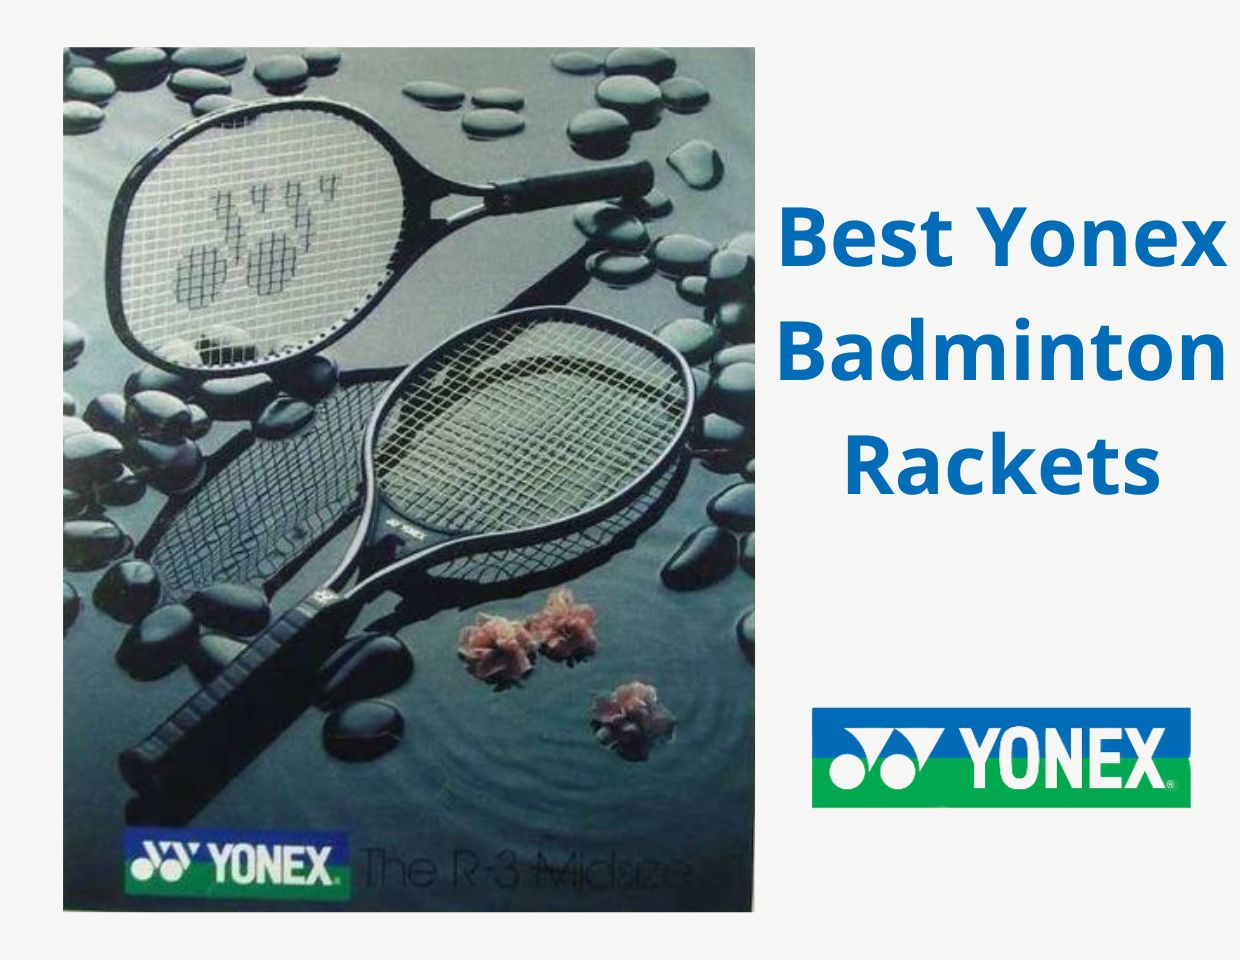 Best Yonex Badminton Rackets